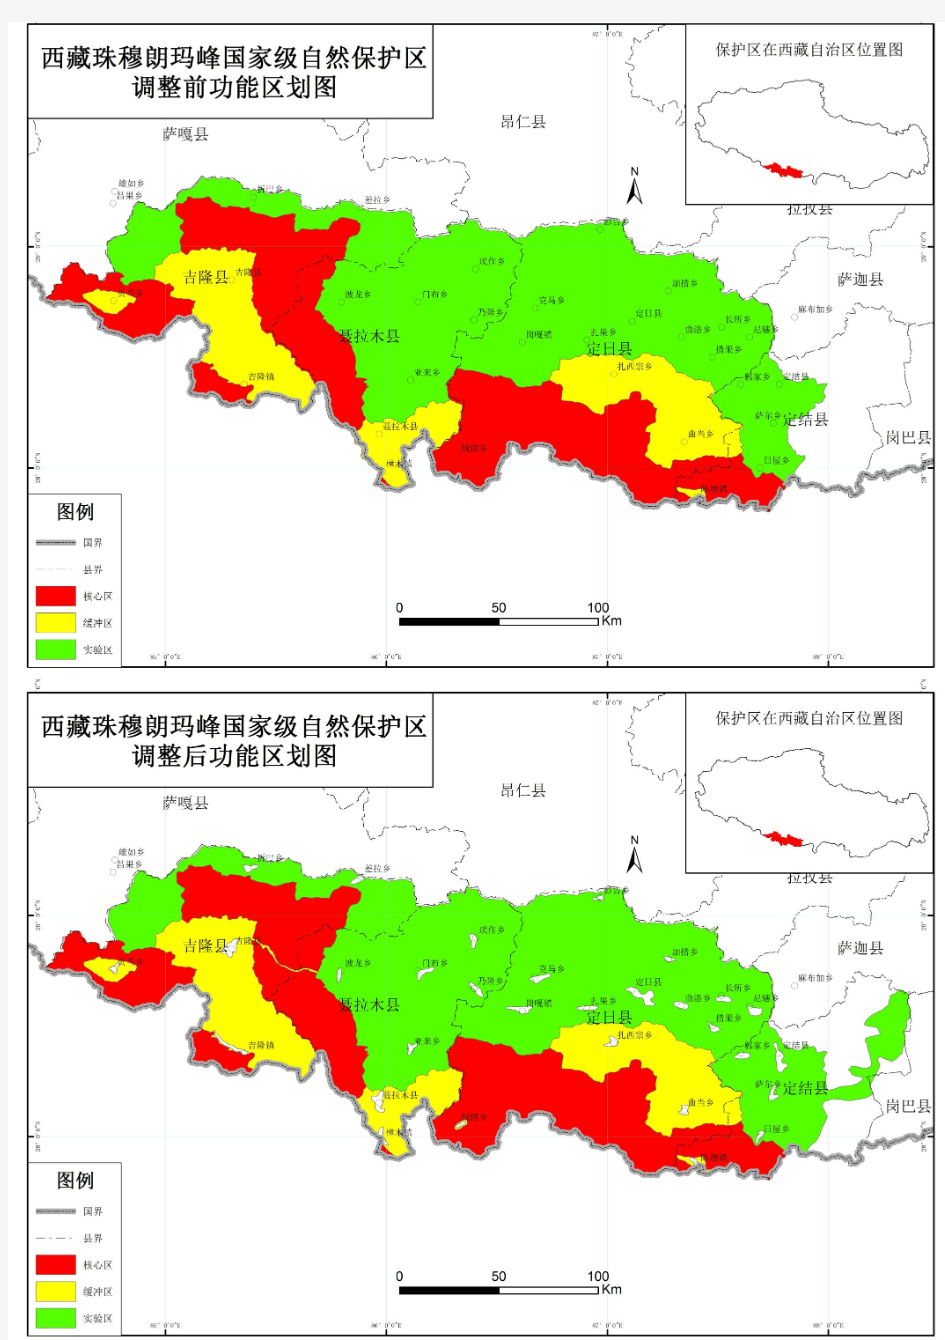 西藏珠穆朗玛峰国家级自然保护区调整前后功能区划图